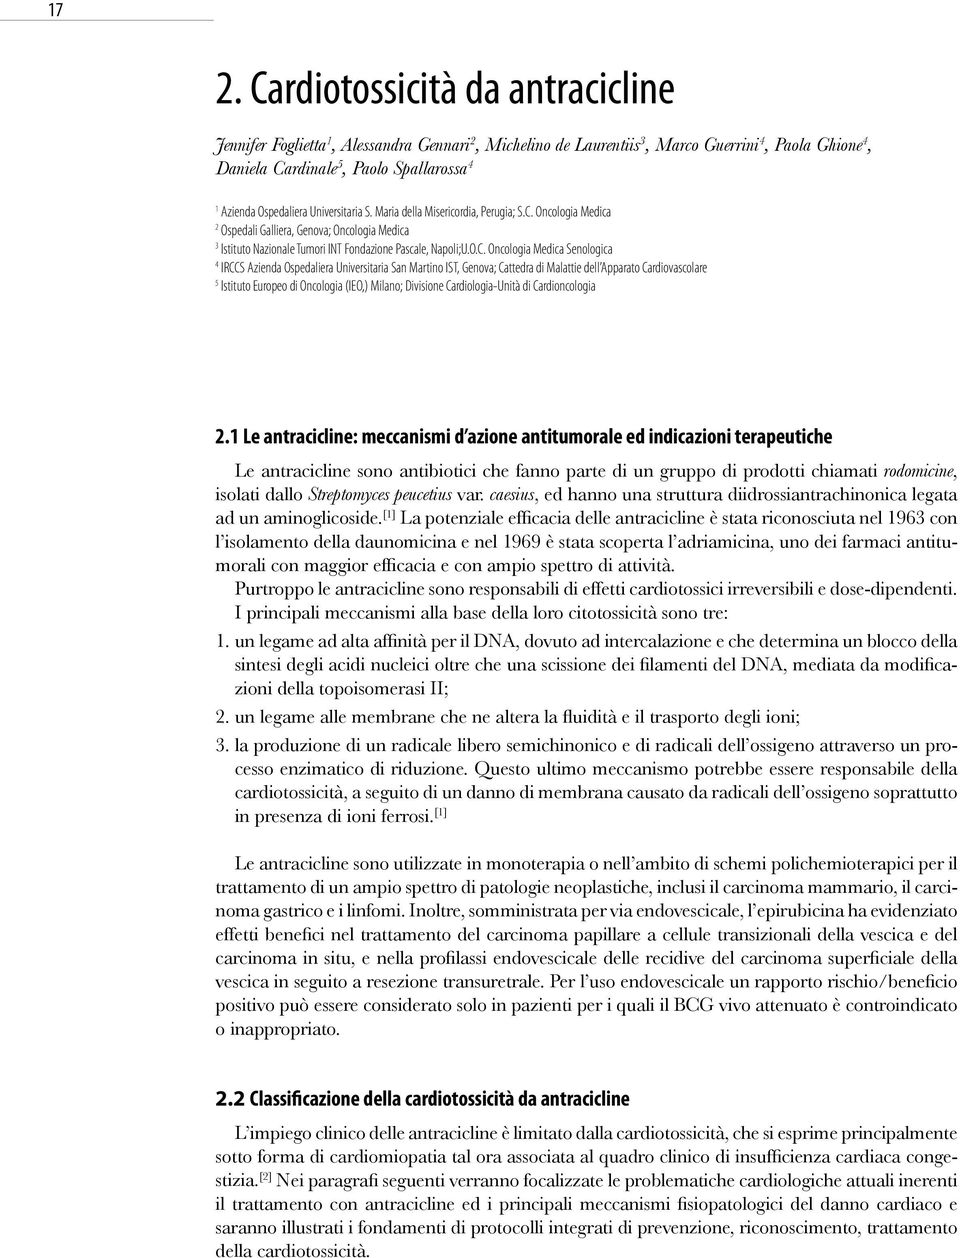 Oncologia Medica 2 Ospedali Galliera, Genova; Oncologia Medica 3 Istituto Nazionale Tumori INT Fondazione Pascale, Napoli;U.O.C.